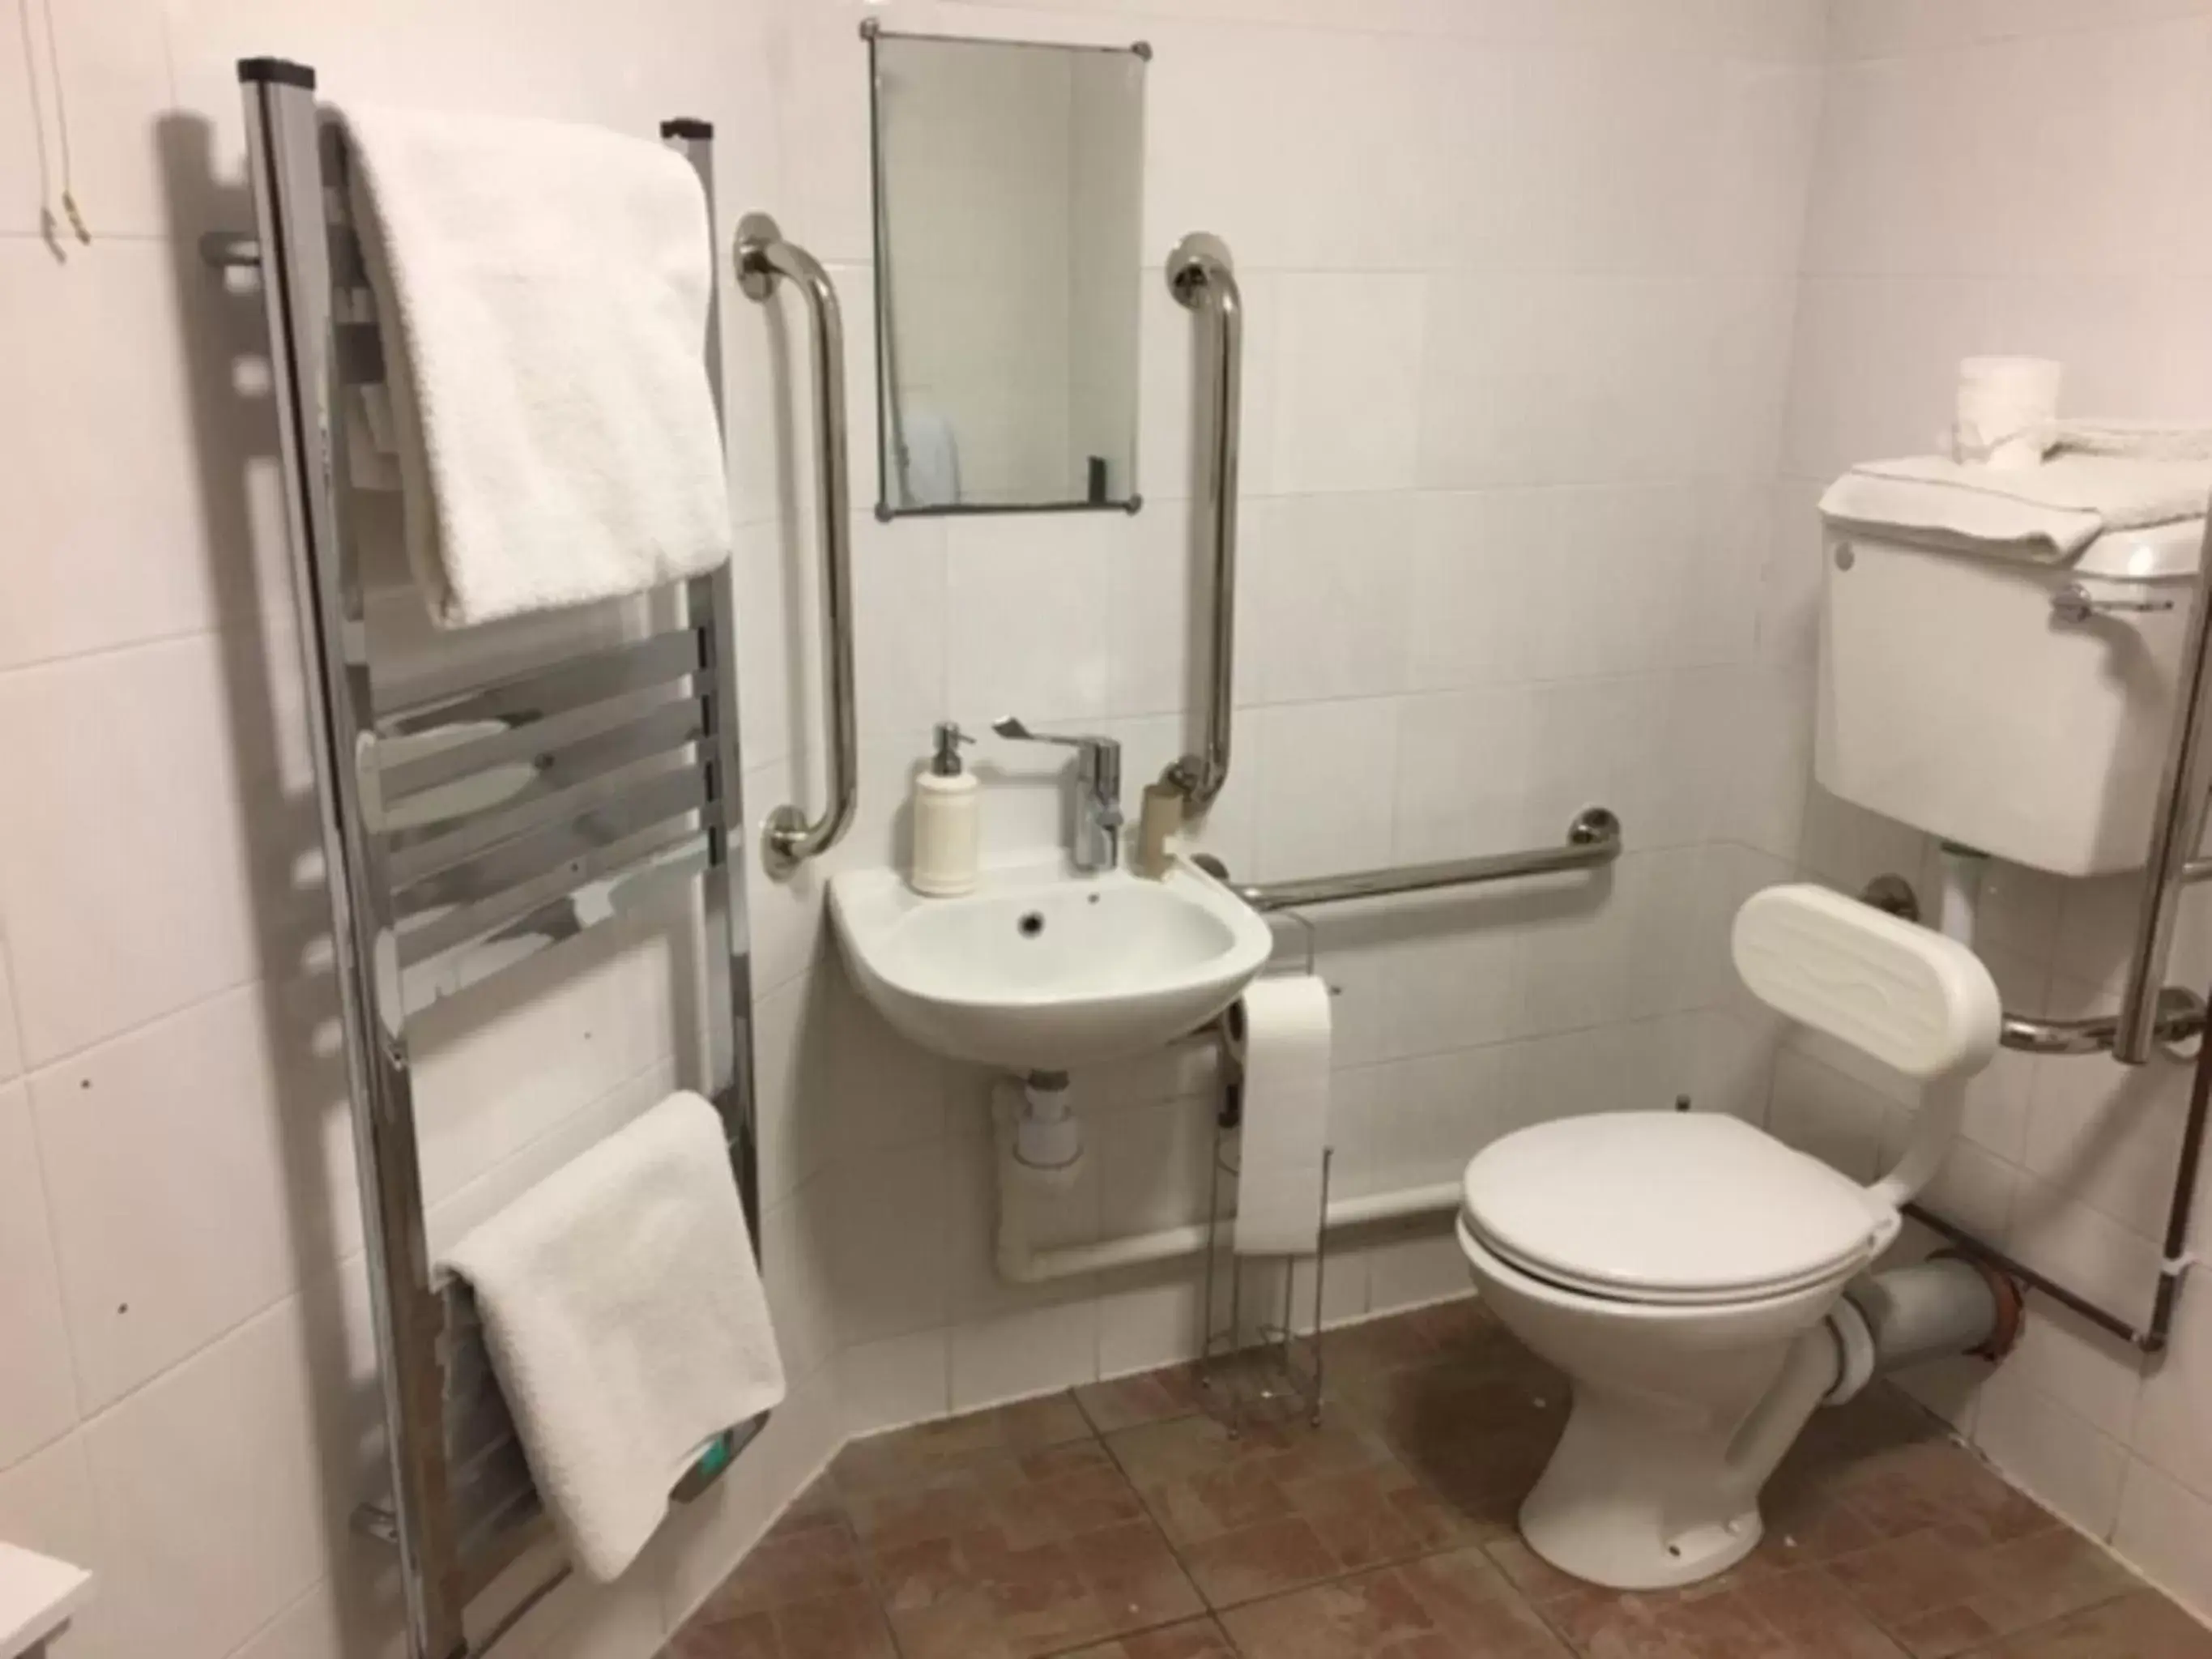 Bathroom in the Engine Inn